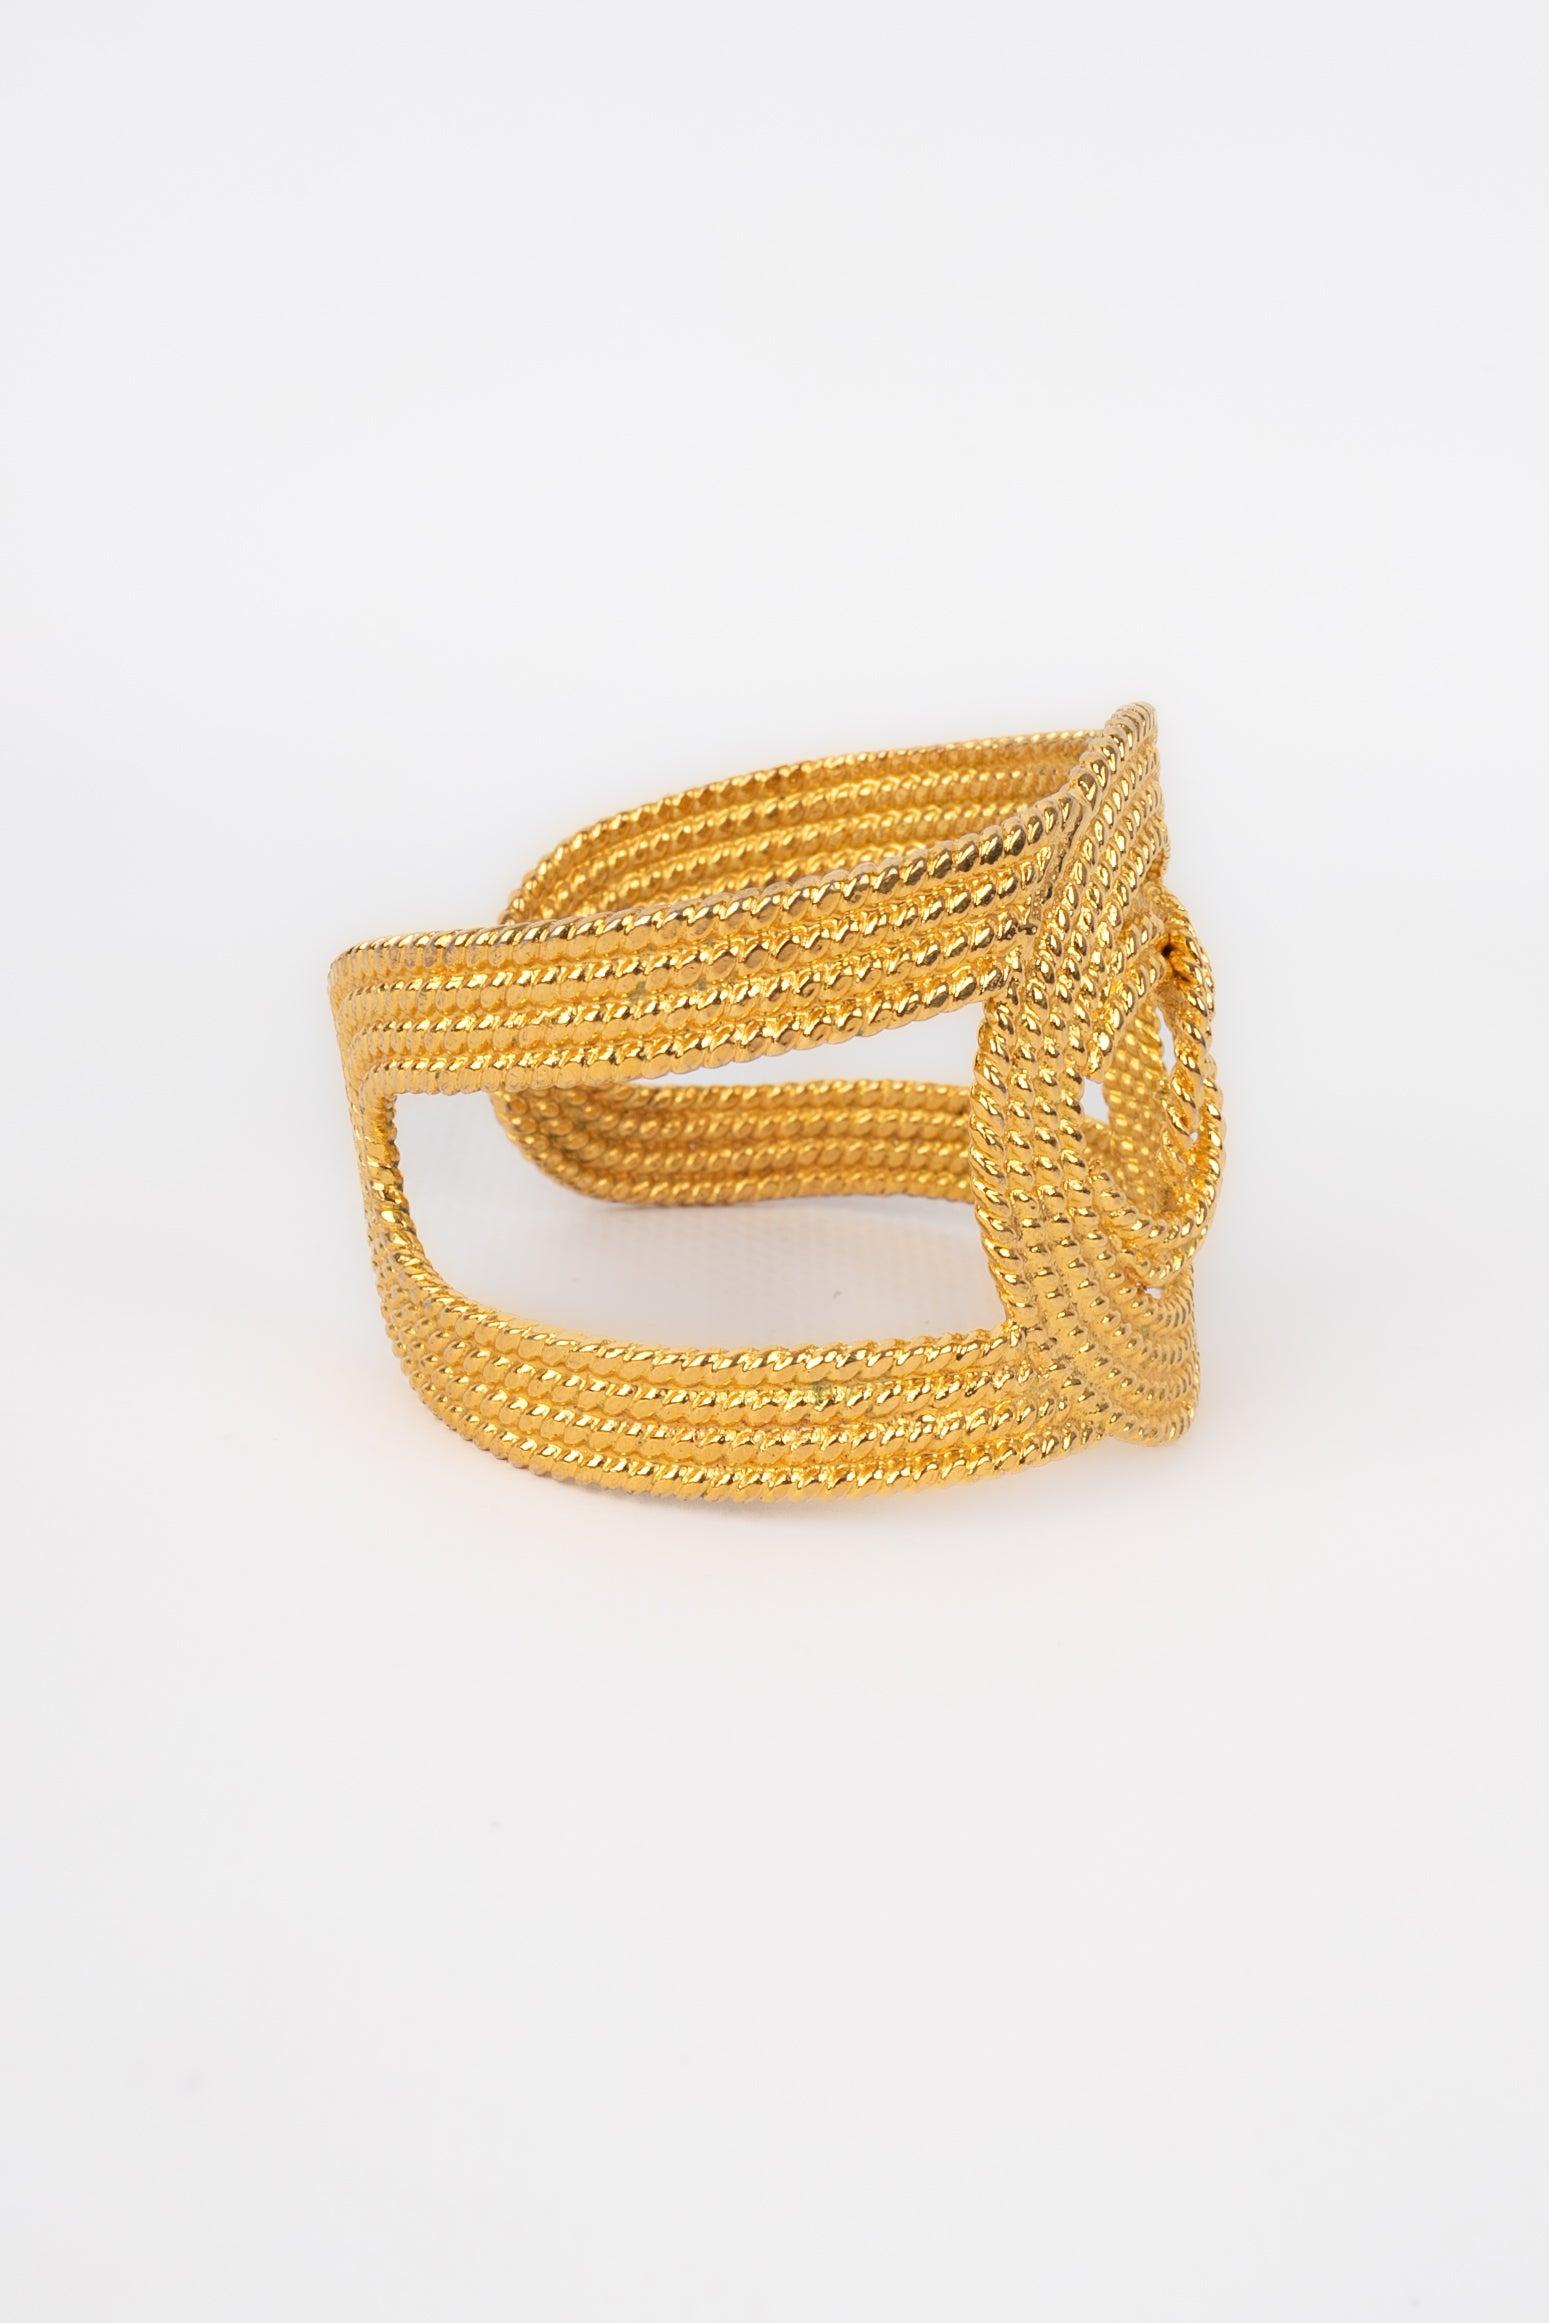 Chanel Openwork Golden Emtal Cuff Bracelet, 2008 In Excellent Condition For Sale In SAINT-OUEN-SUR-SEINE, FR